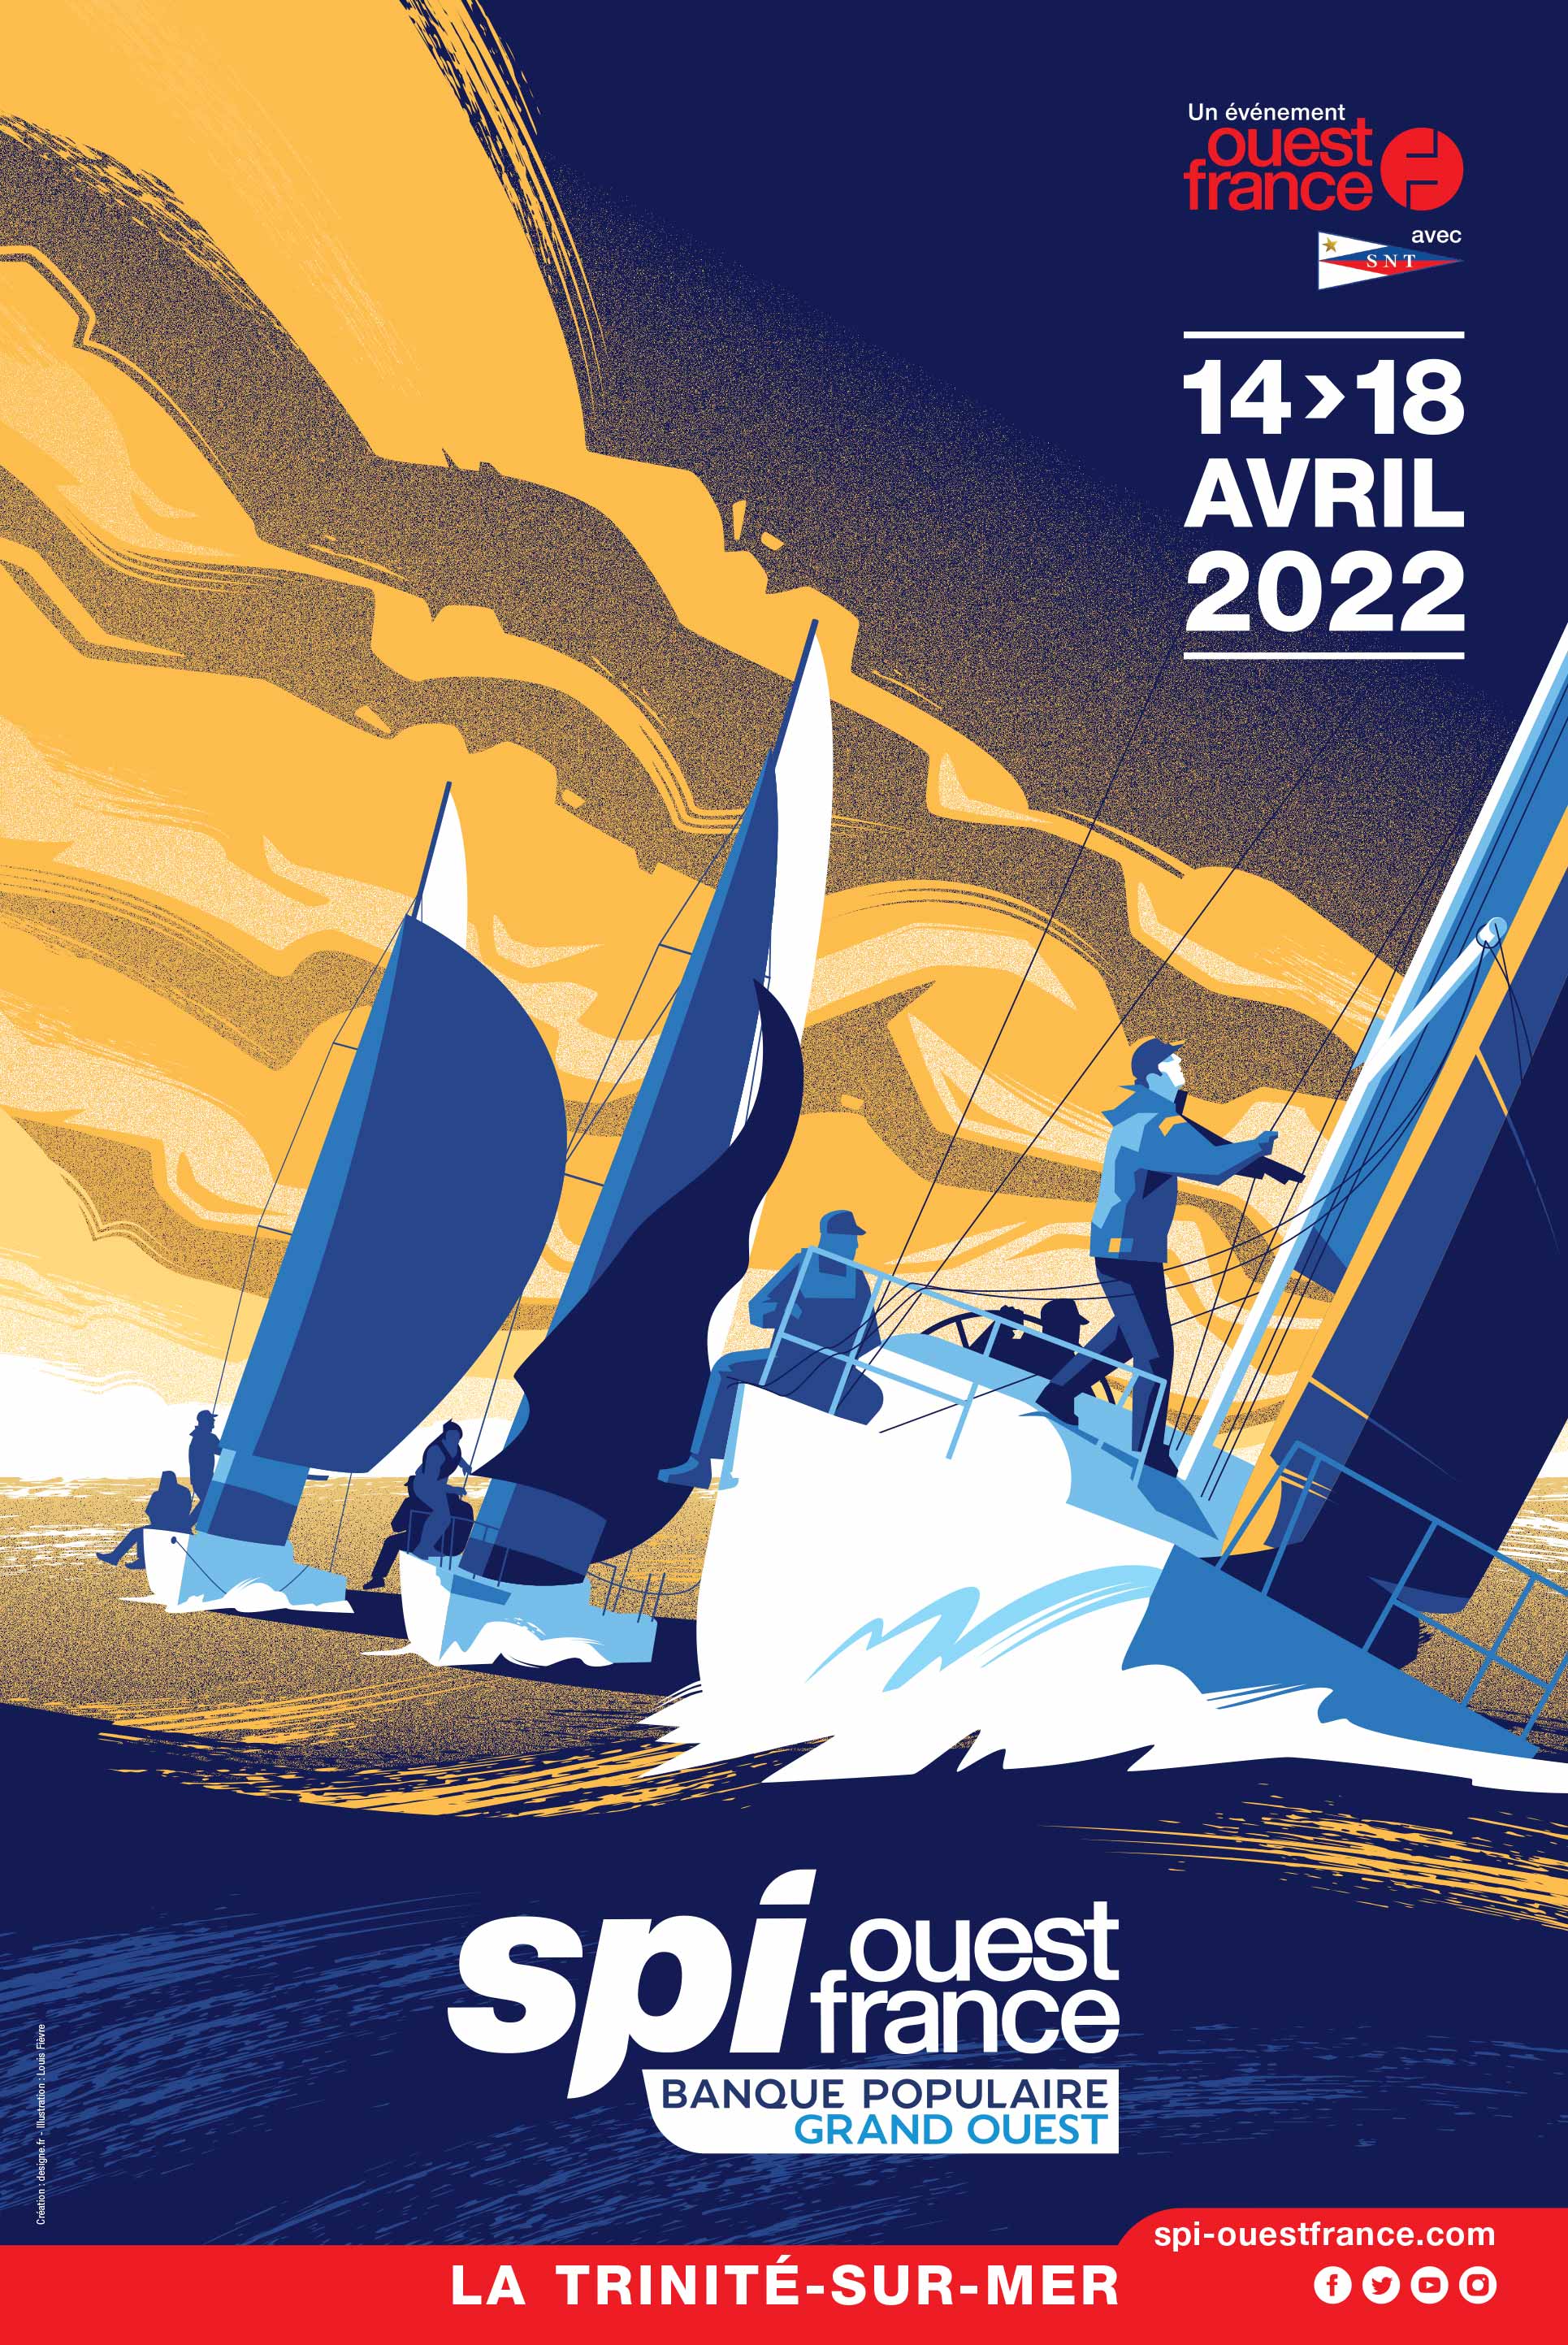 Illustration de l'affiche du Spi Ouest France 2022, mettant en avant la course de voile emblématique.